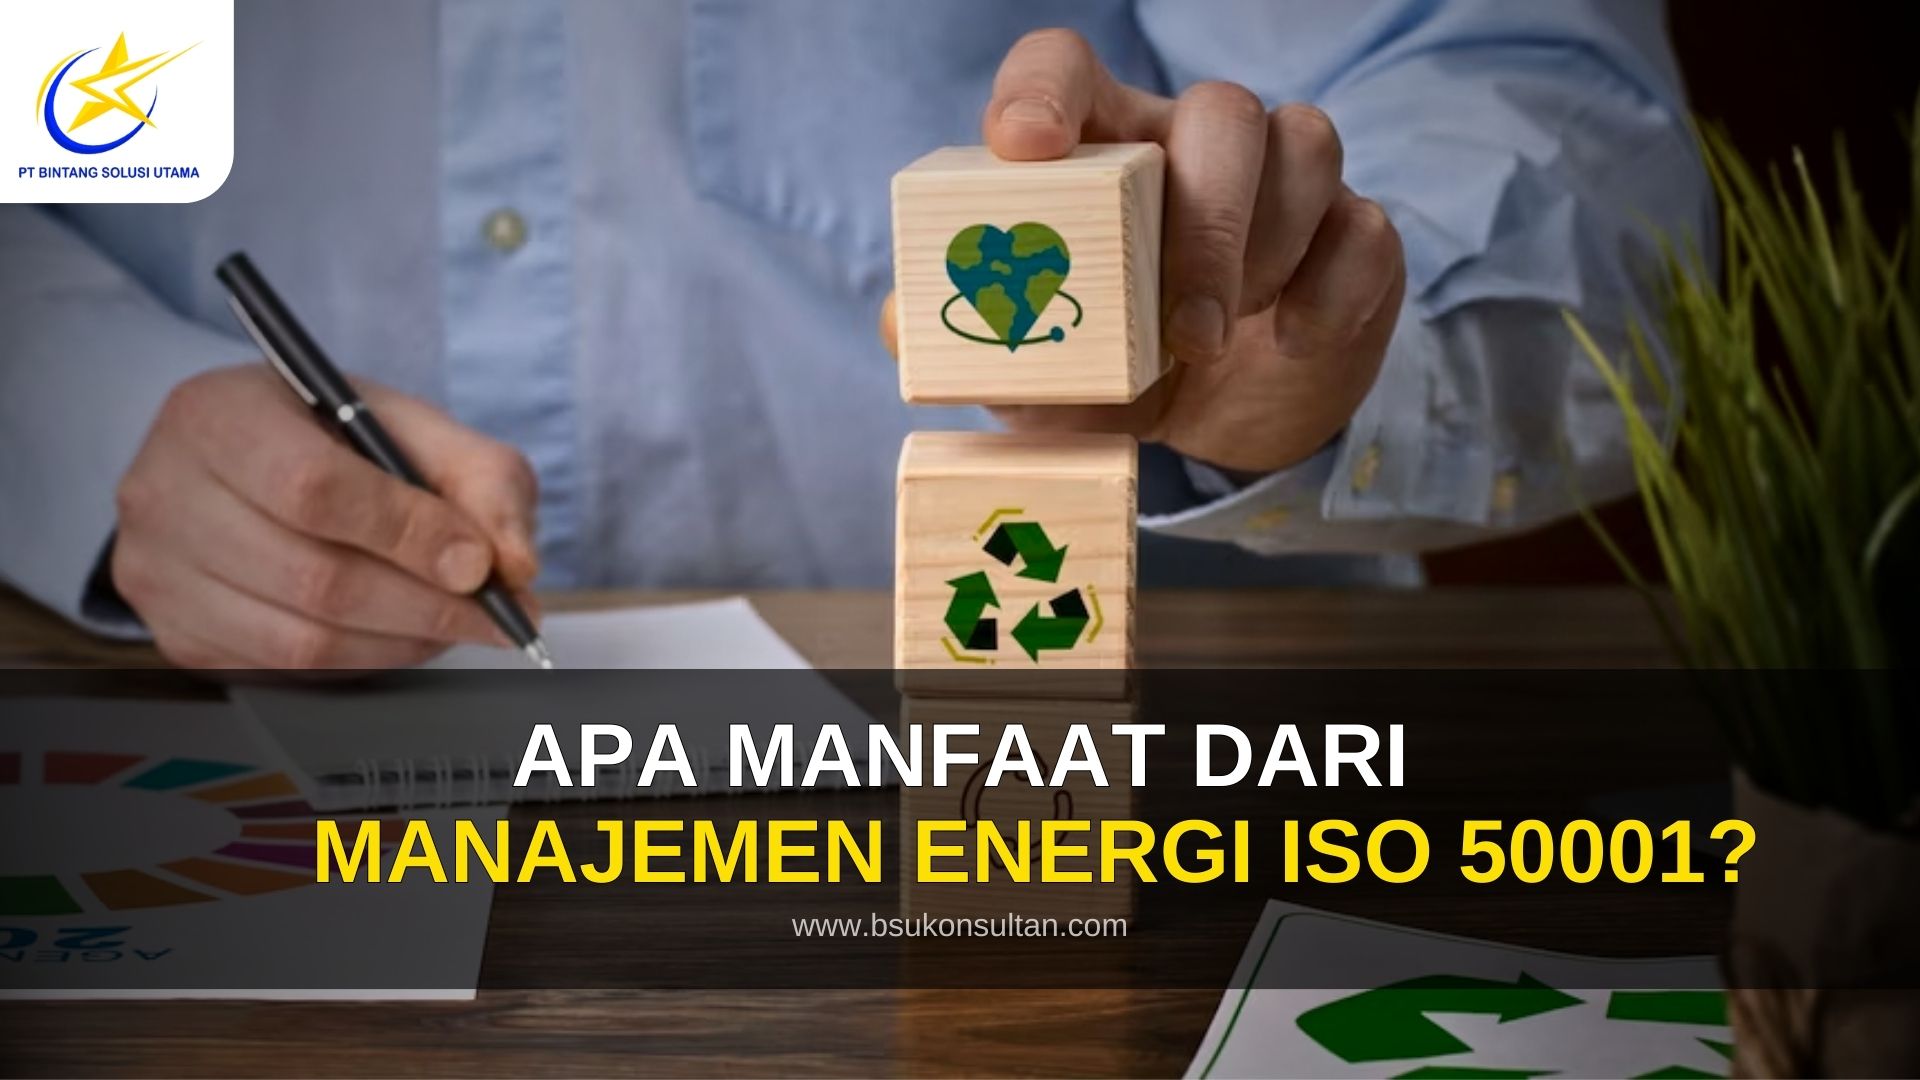 Apa Manfaat dari manajemen energi ISO 50001?